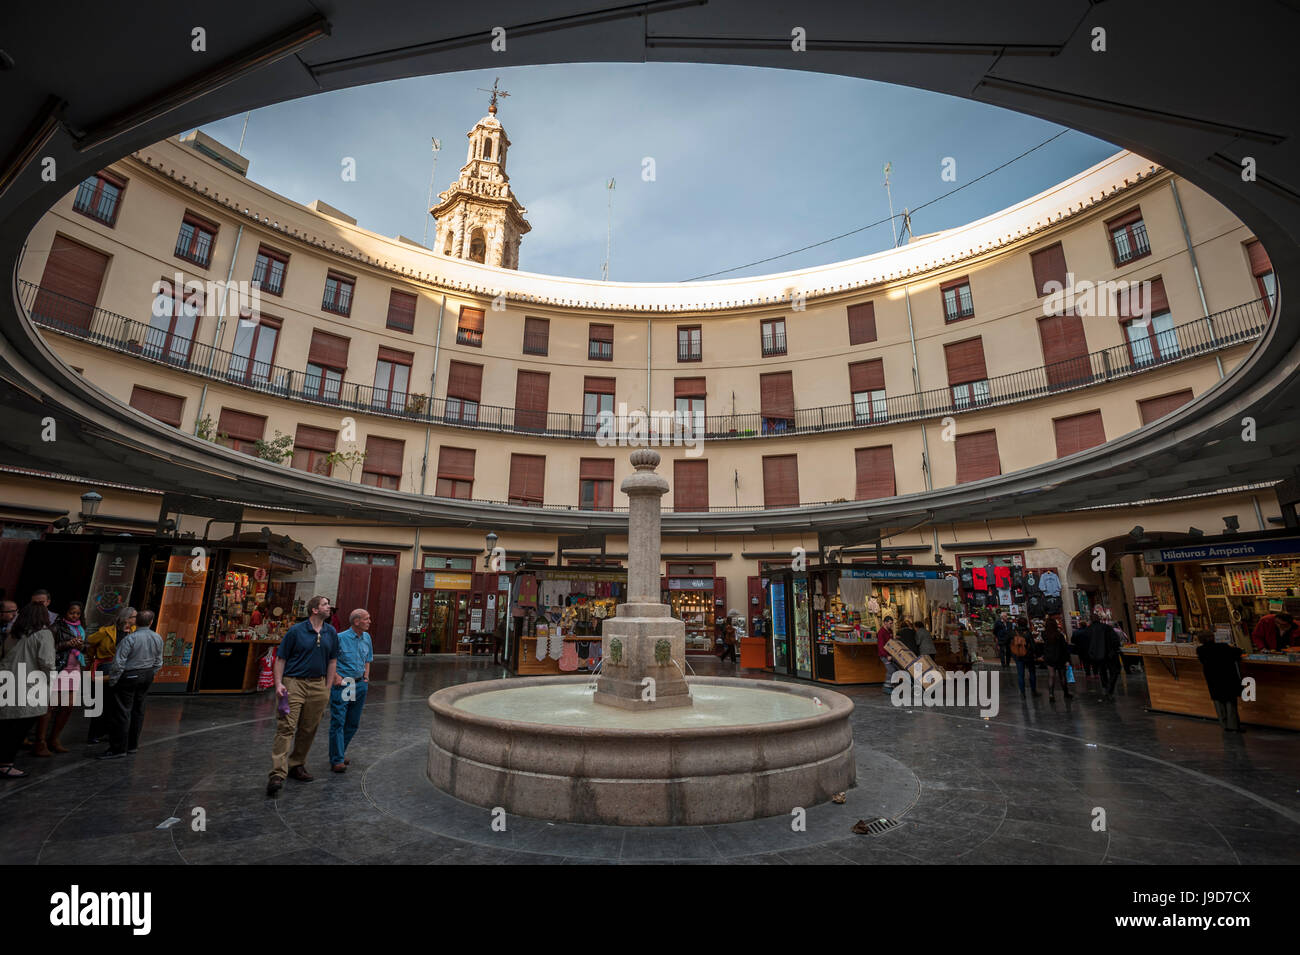 Placa Redonda (il quadrato rotondo), Valencia, Spagna, Europa Foto Stock